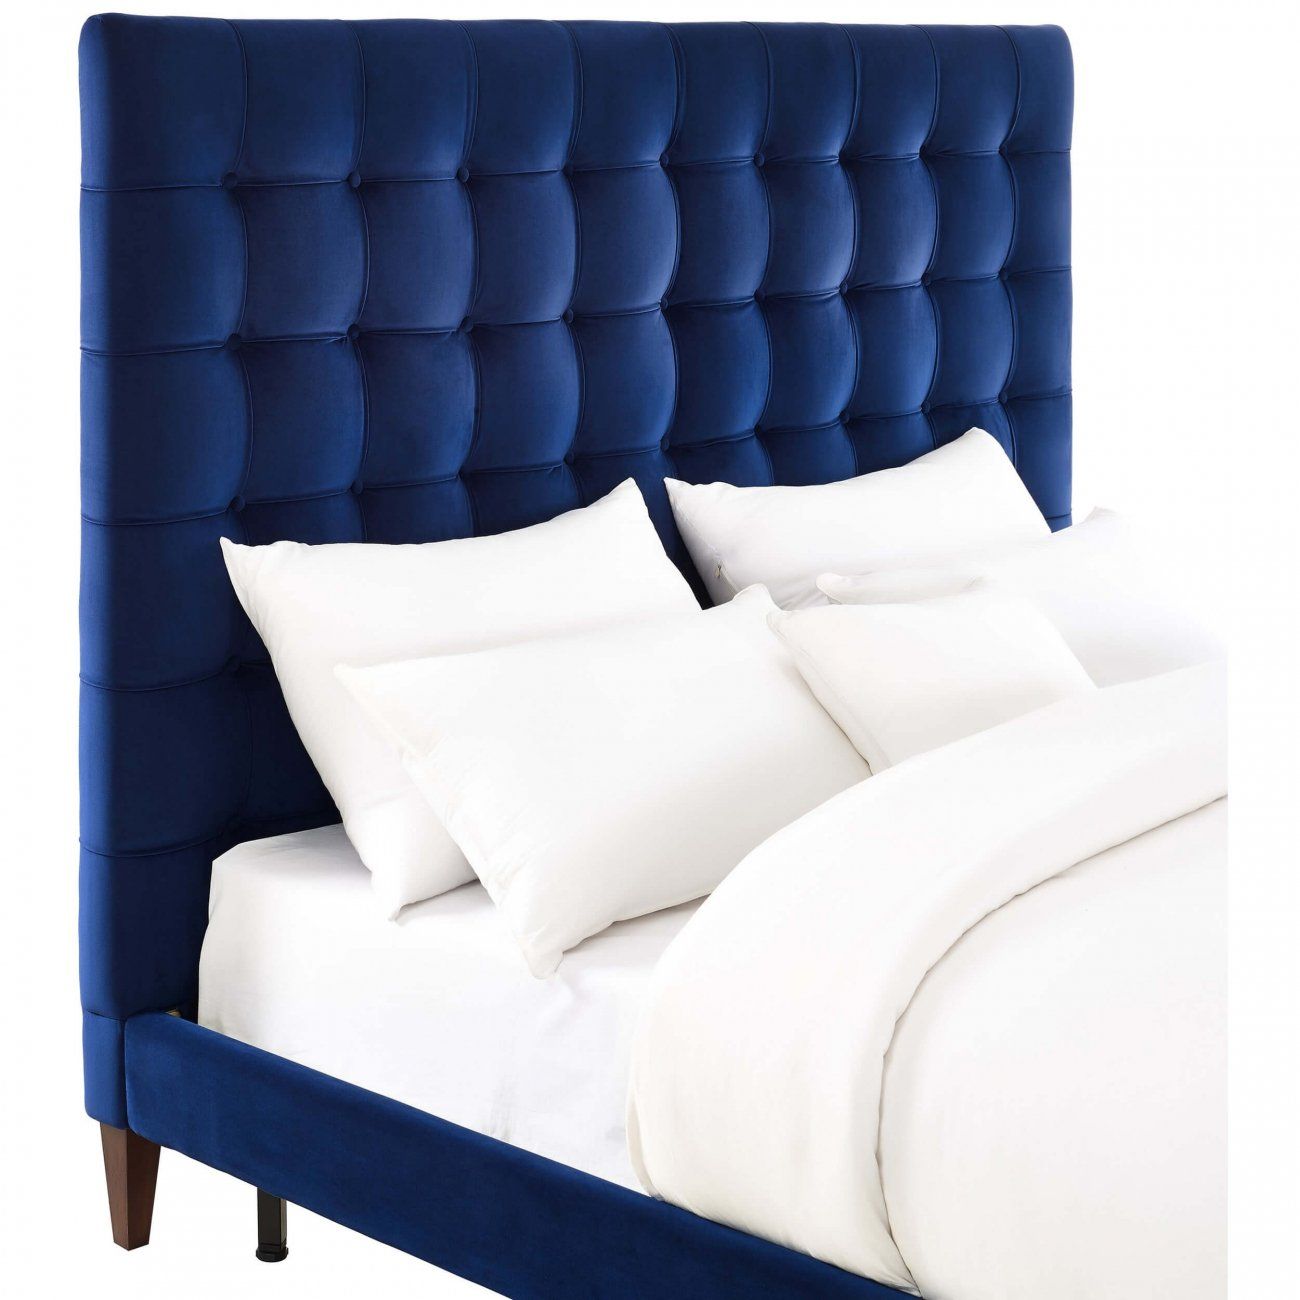 Кровать двуспальная 160х200 синяя из велюра Eden